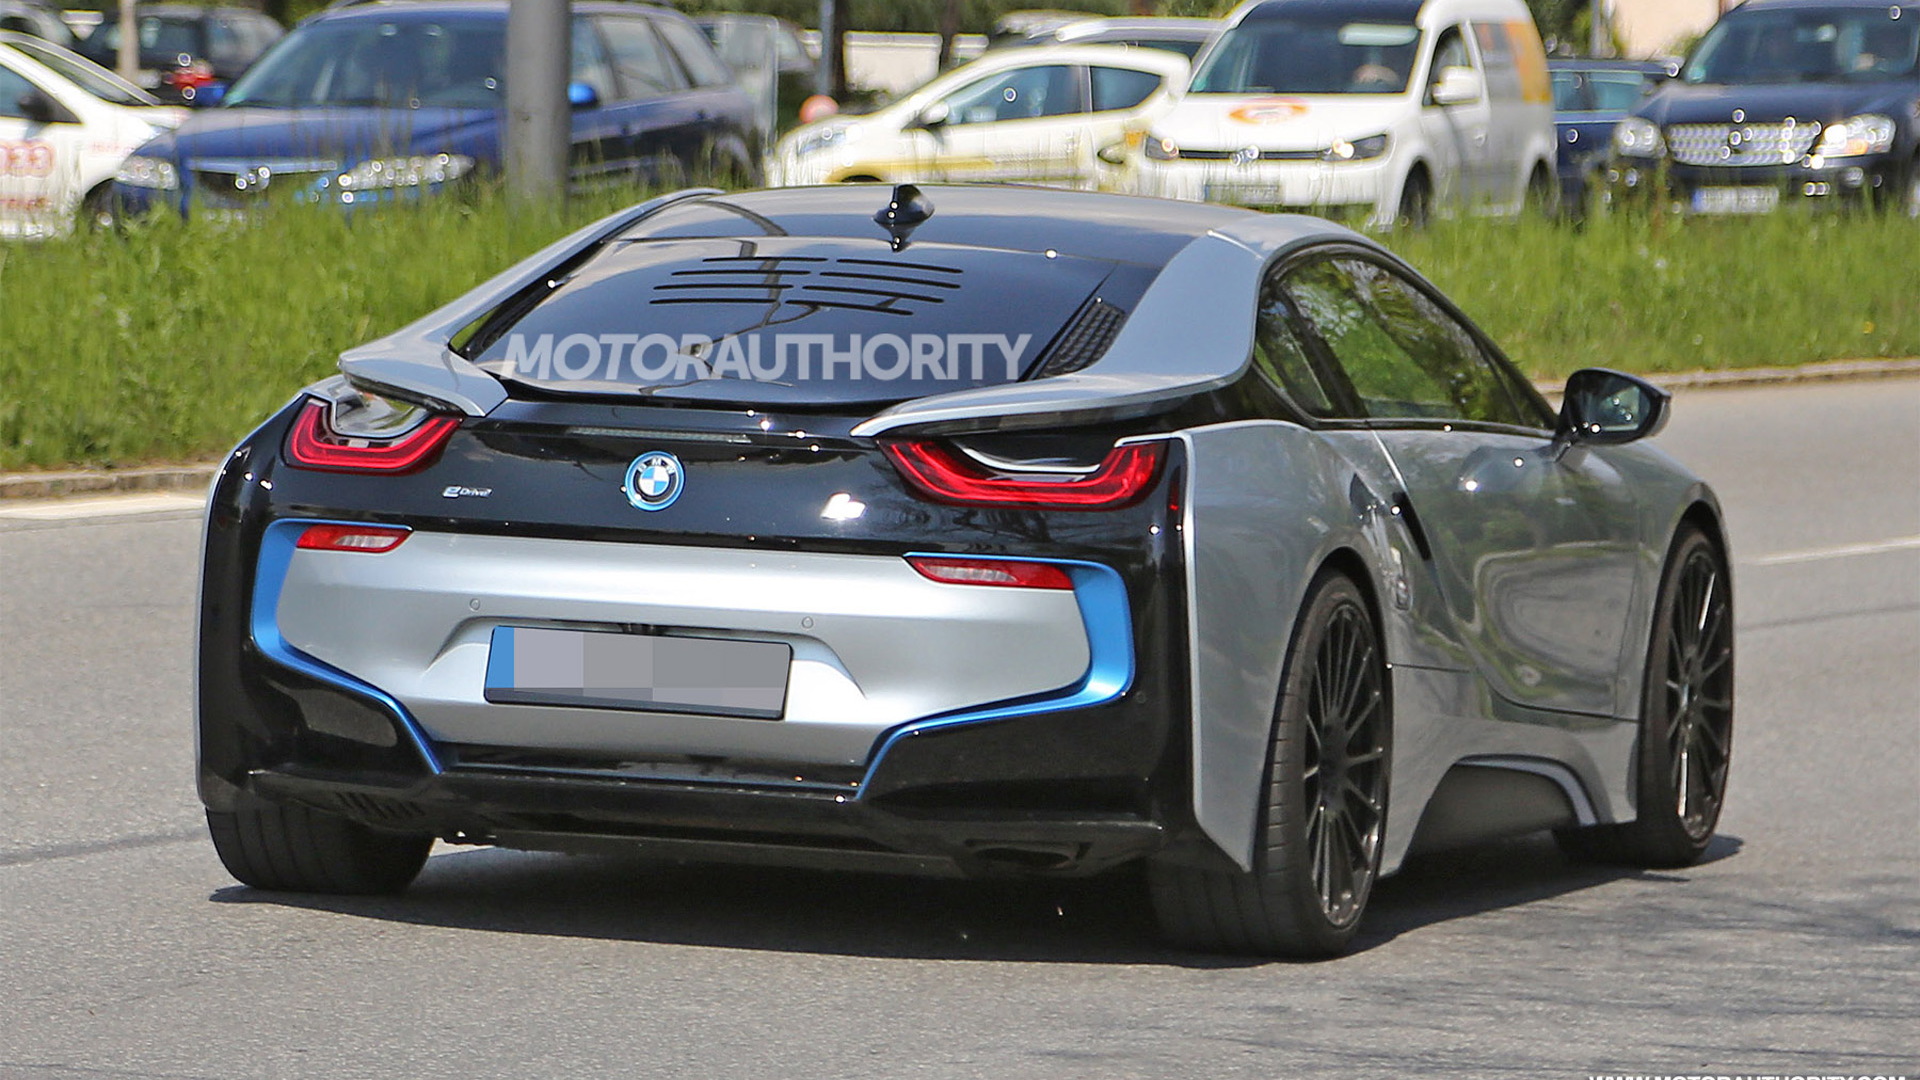 2019 BMW i8 facelift spy shots - Image via S. Baldauf/SB-Medien